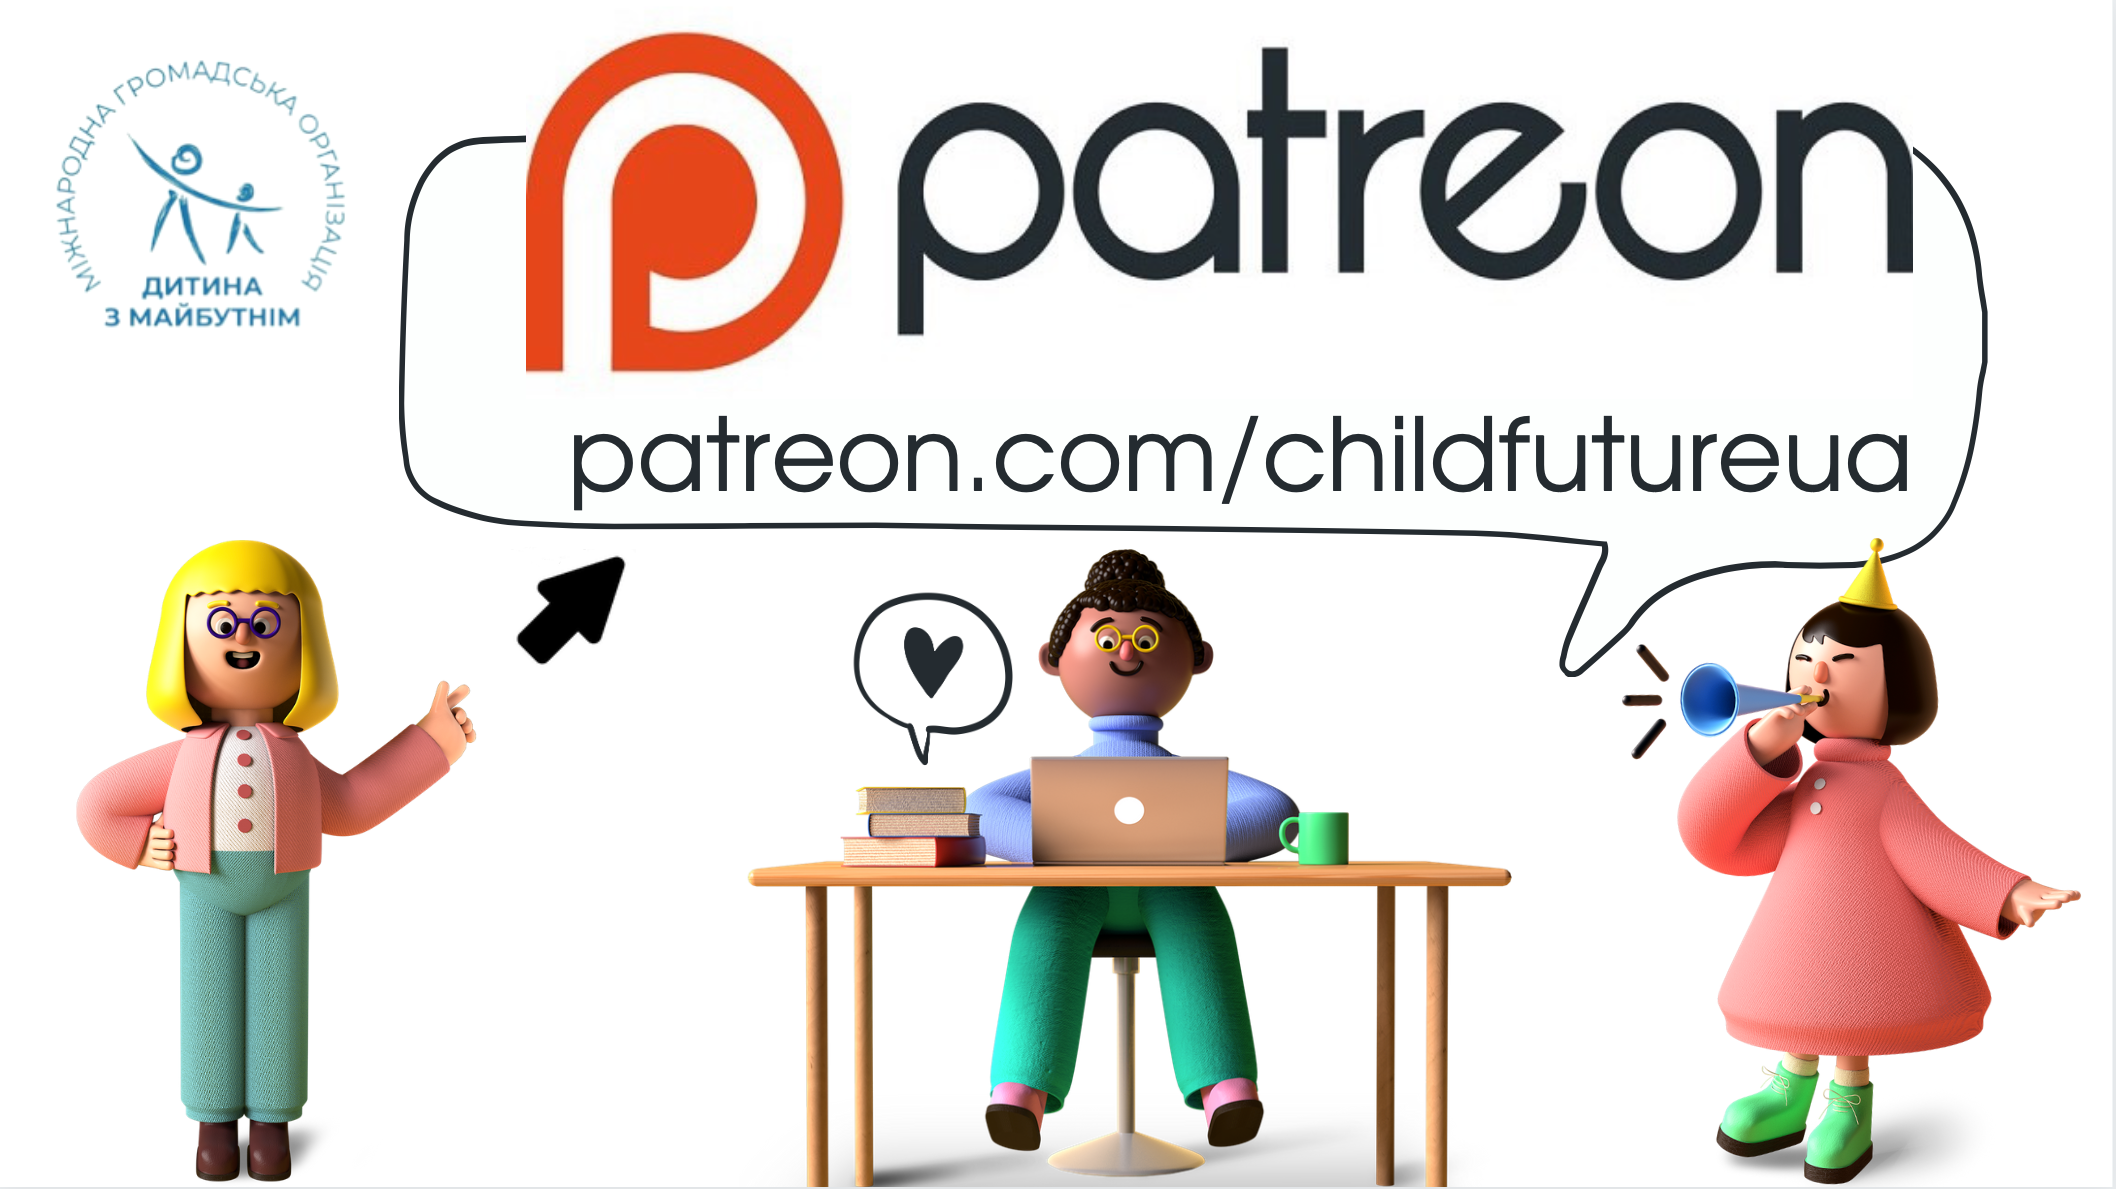 Сторінка МГО “Дитина з майбутнім” тепер на Patreon.com